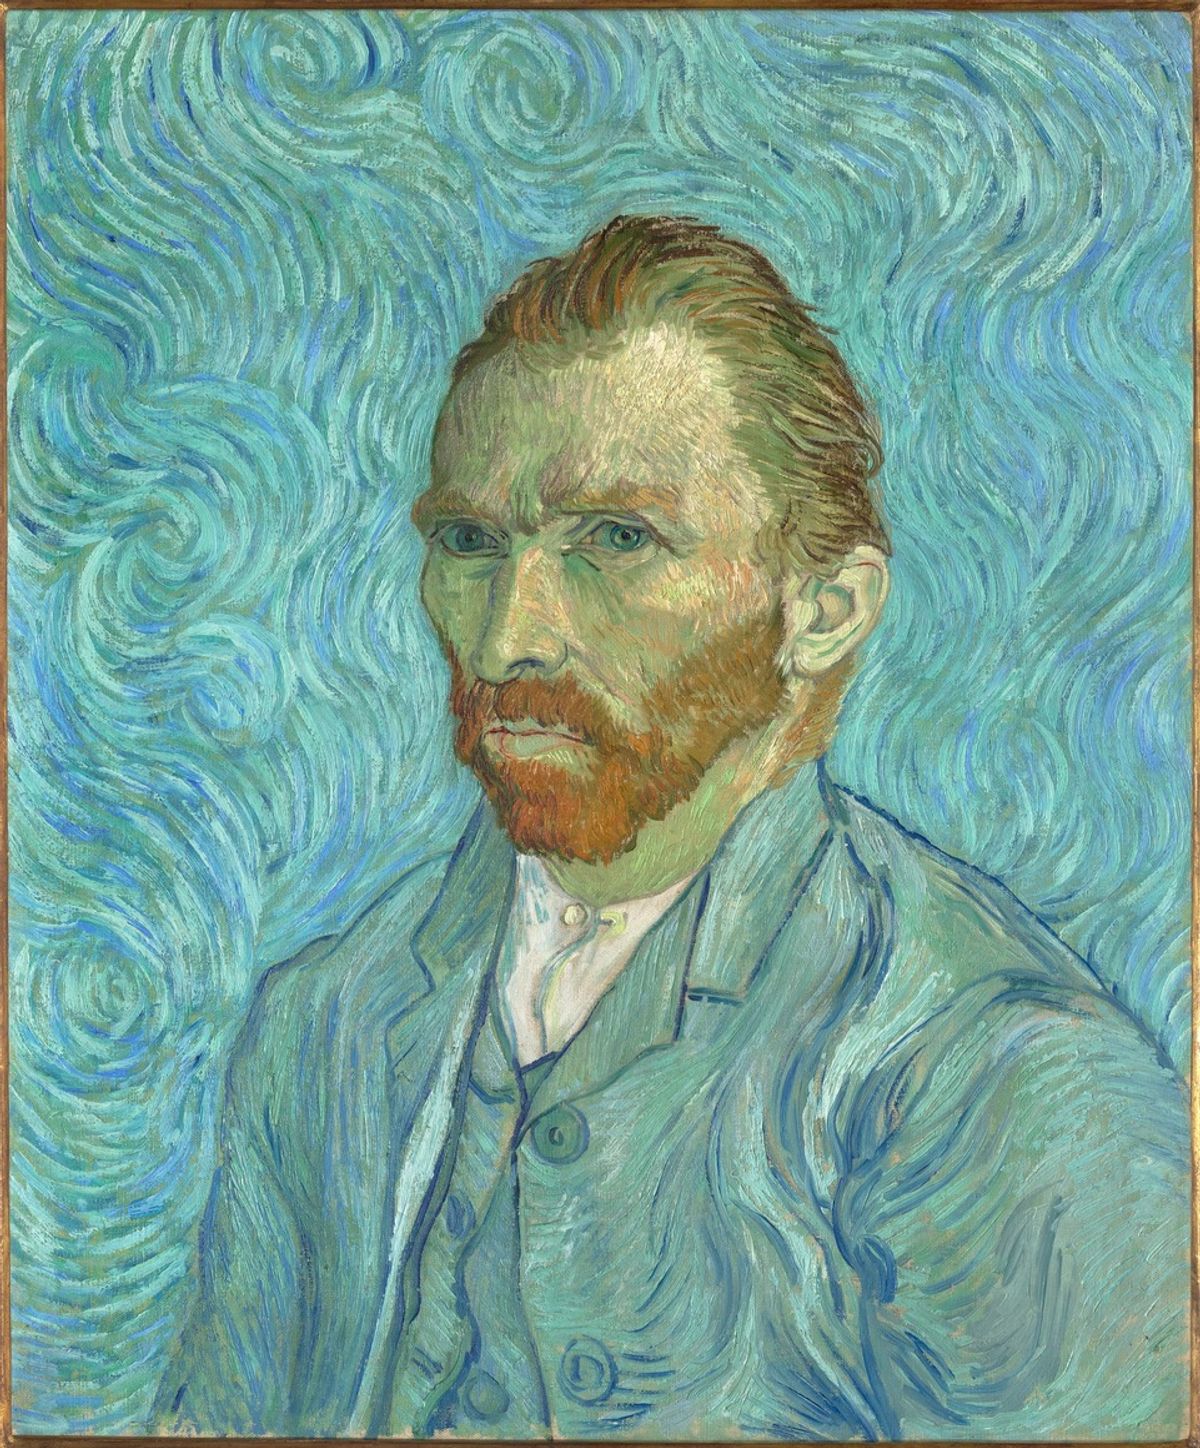 Vincent van Gogh, Self-portrait (1889), given to Dr Paul Gachet © Photo: Distribution RMN Musée d'Orsay, Paris/Patrice Schmidt